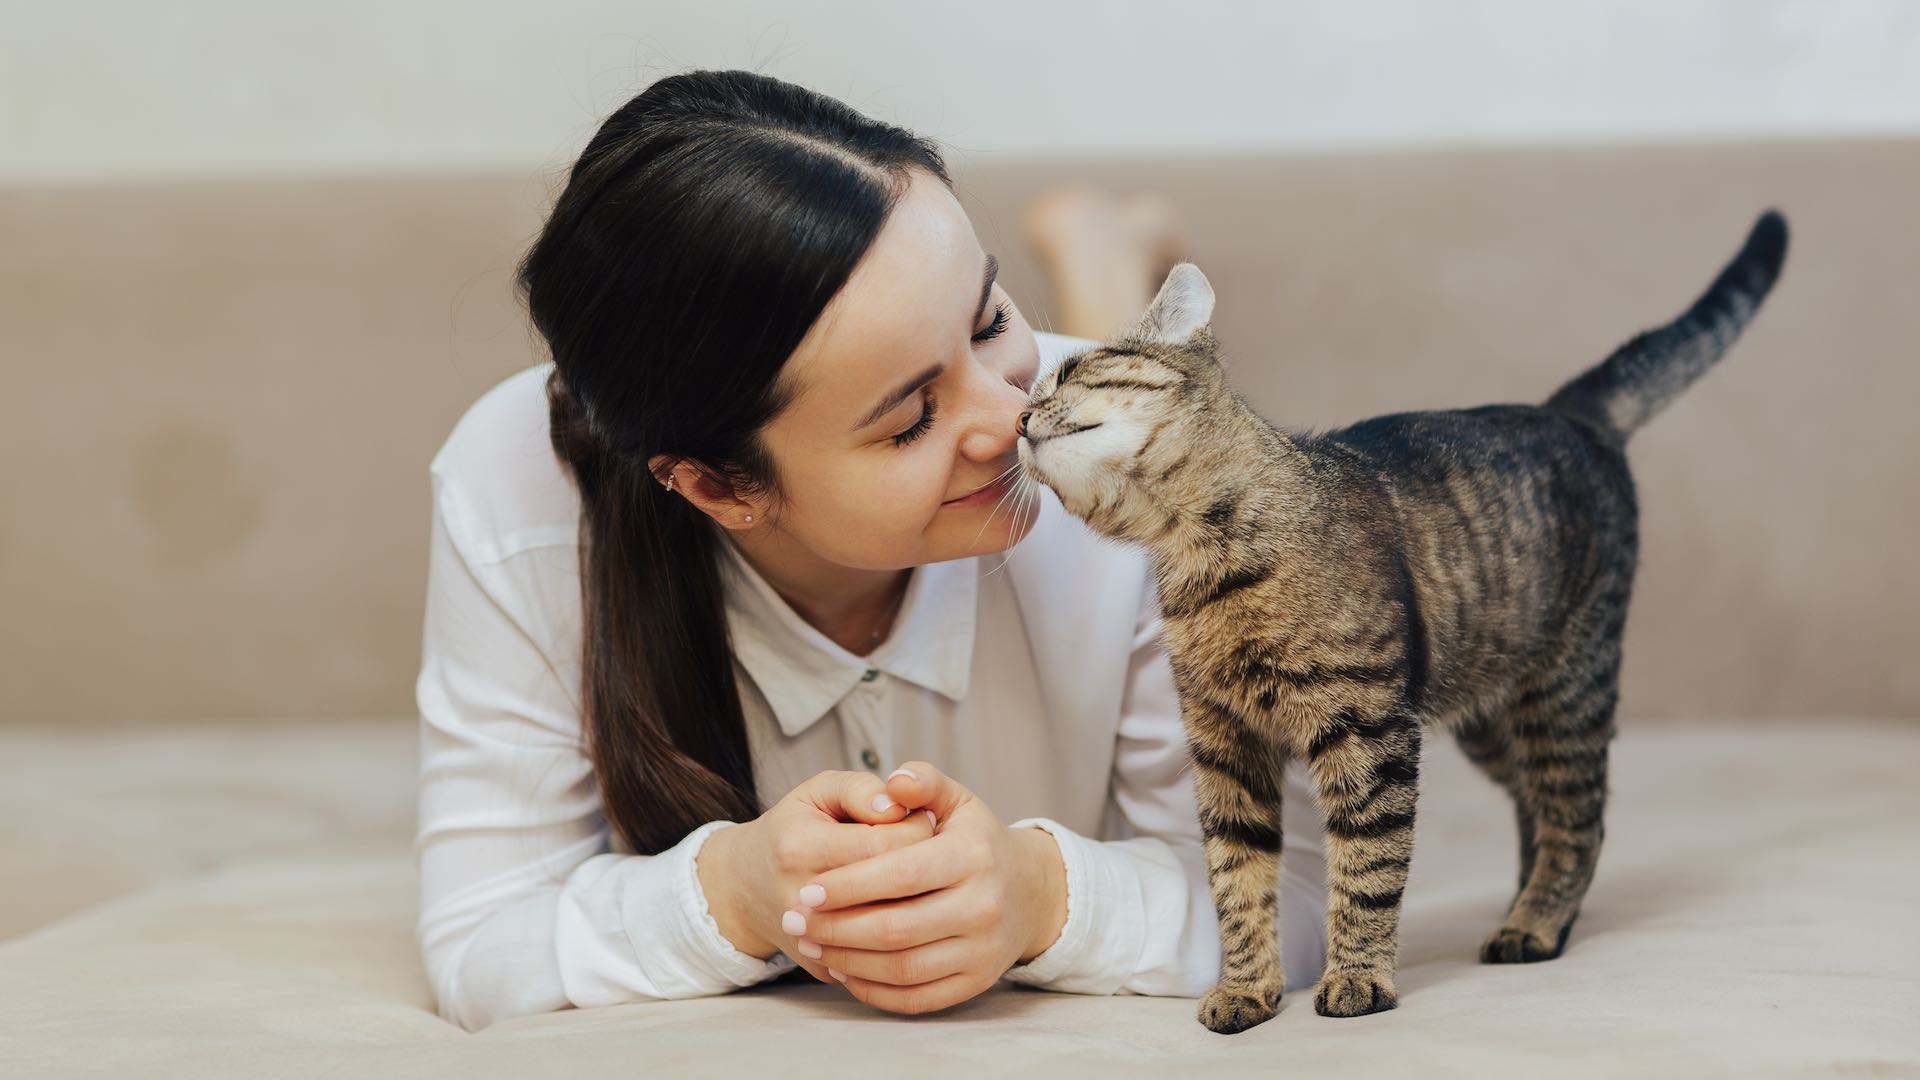 स्किझोफ्रेनियाच्या वाढीव जोखमीशी मांजरीच्या मालकीचा अभ्यास जोडतो, पुढील संशोधनाची गरज आहे